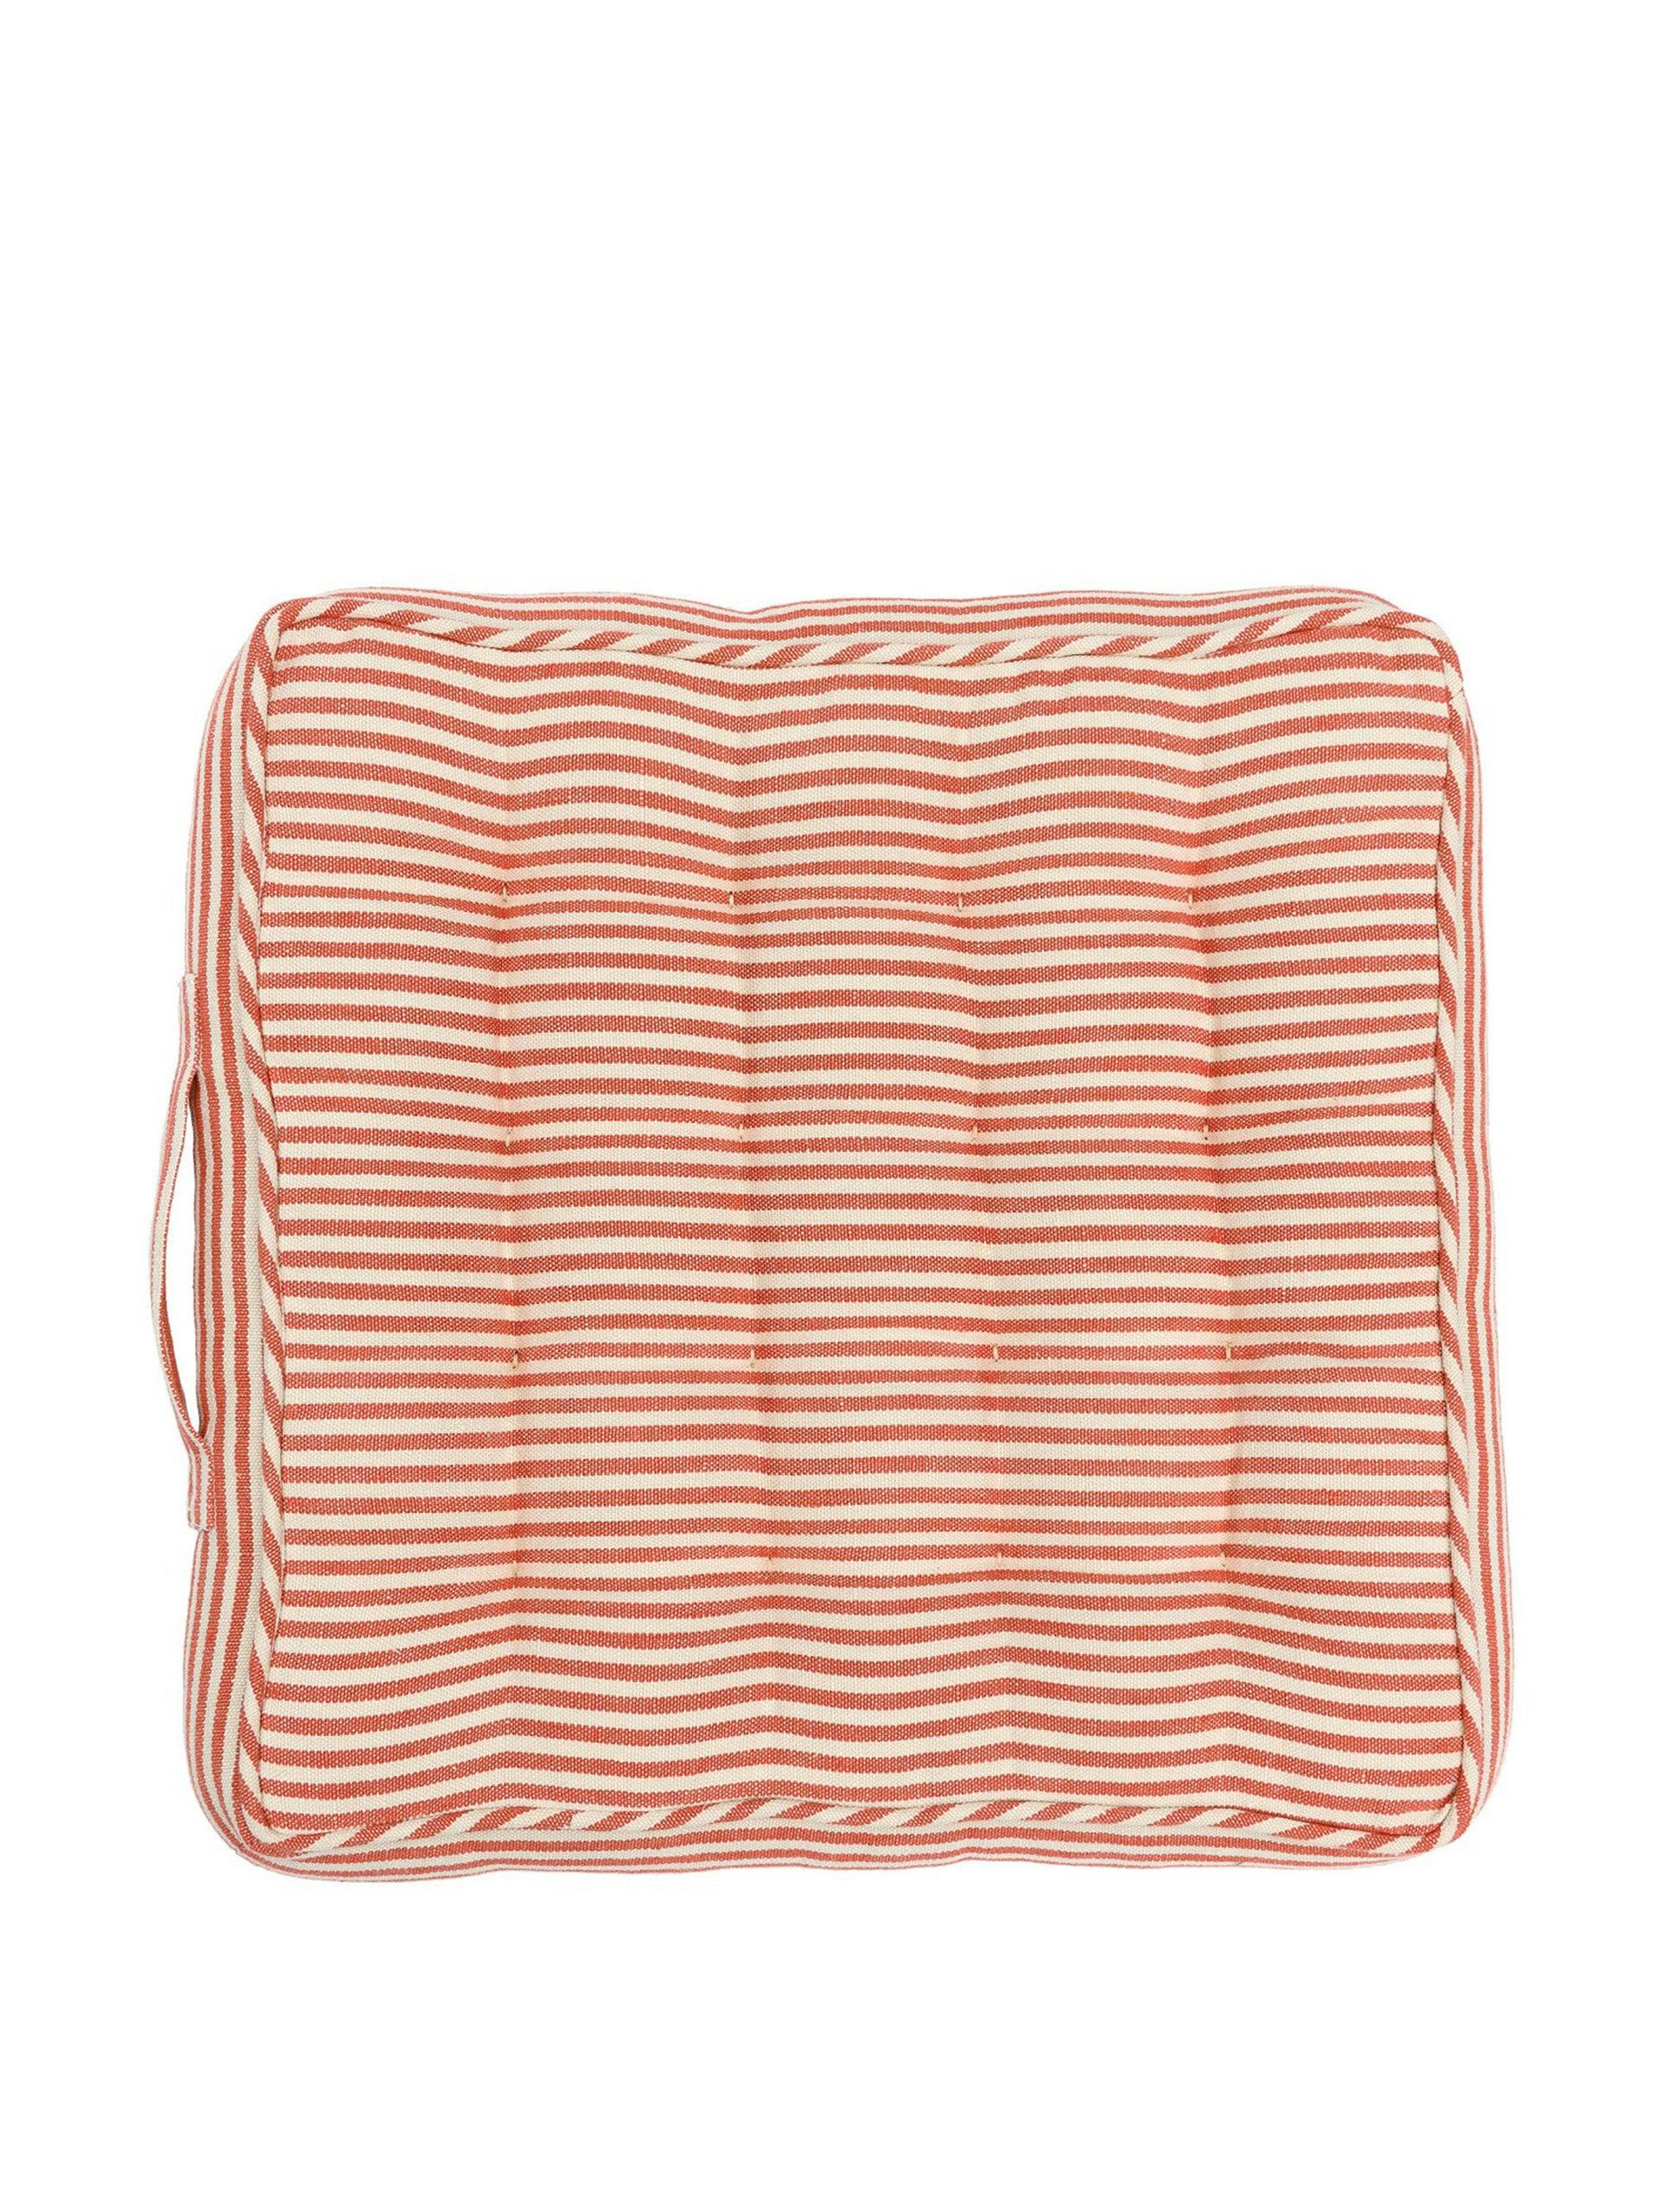 Rhubarb stripe linen chair cushion